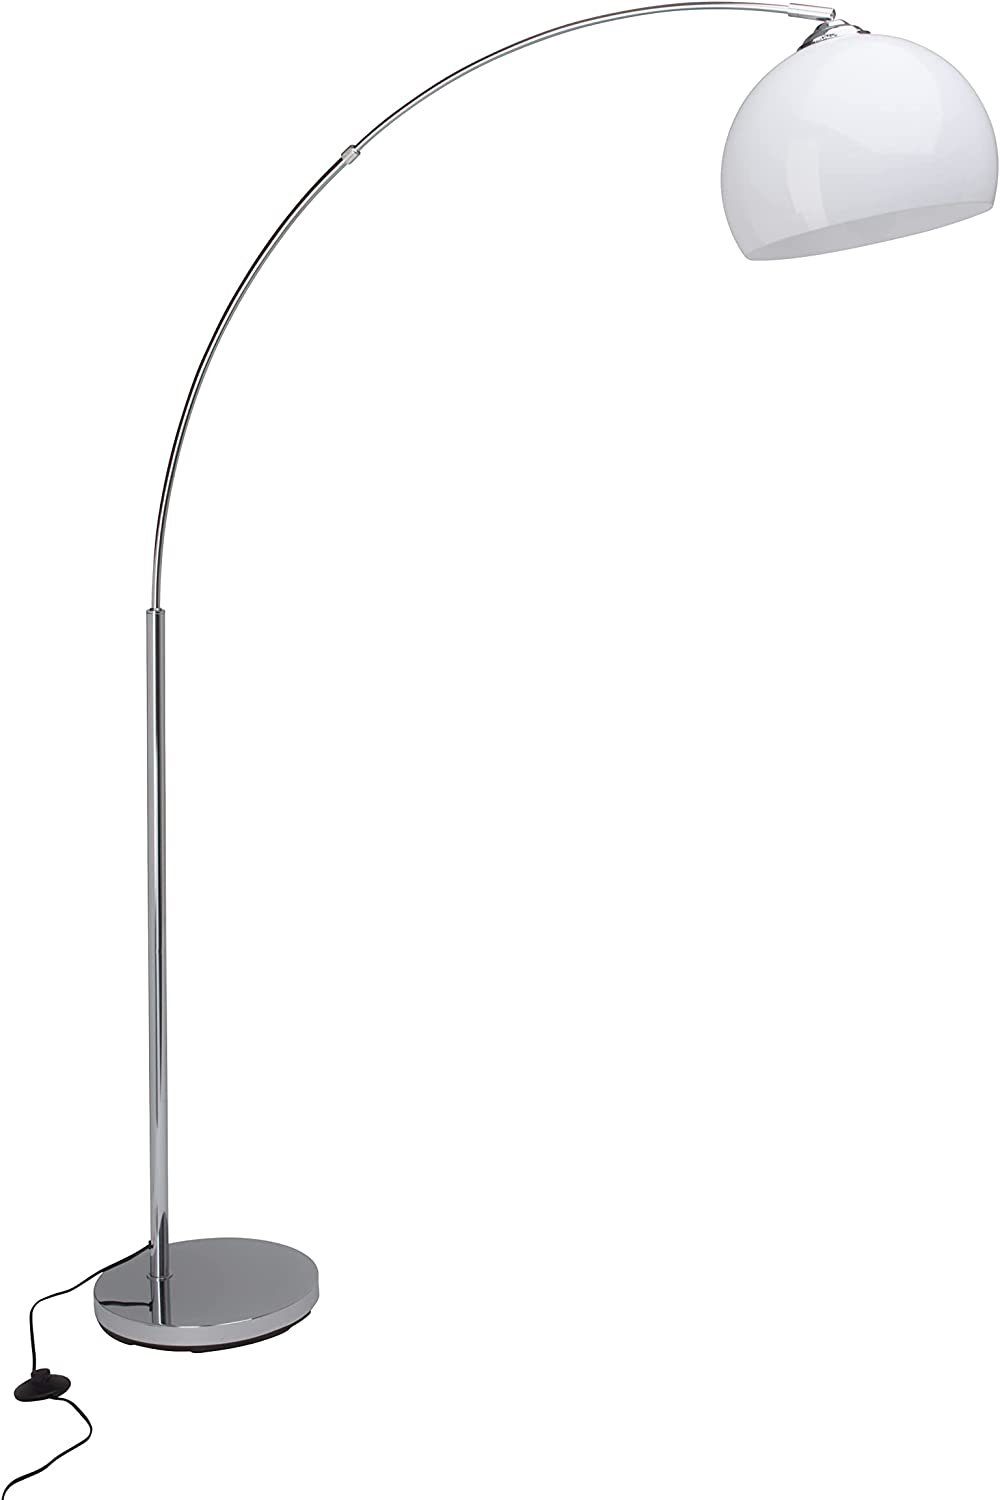 Stehlampe Brilliant ZWEITE WAHL Lampe Vessa, chrom/weiß Vessa 1,7m Bogenstandleuchte